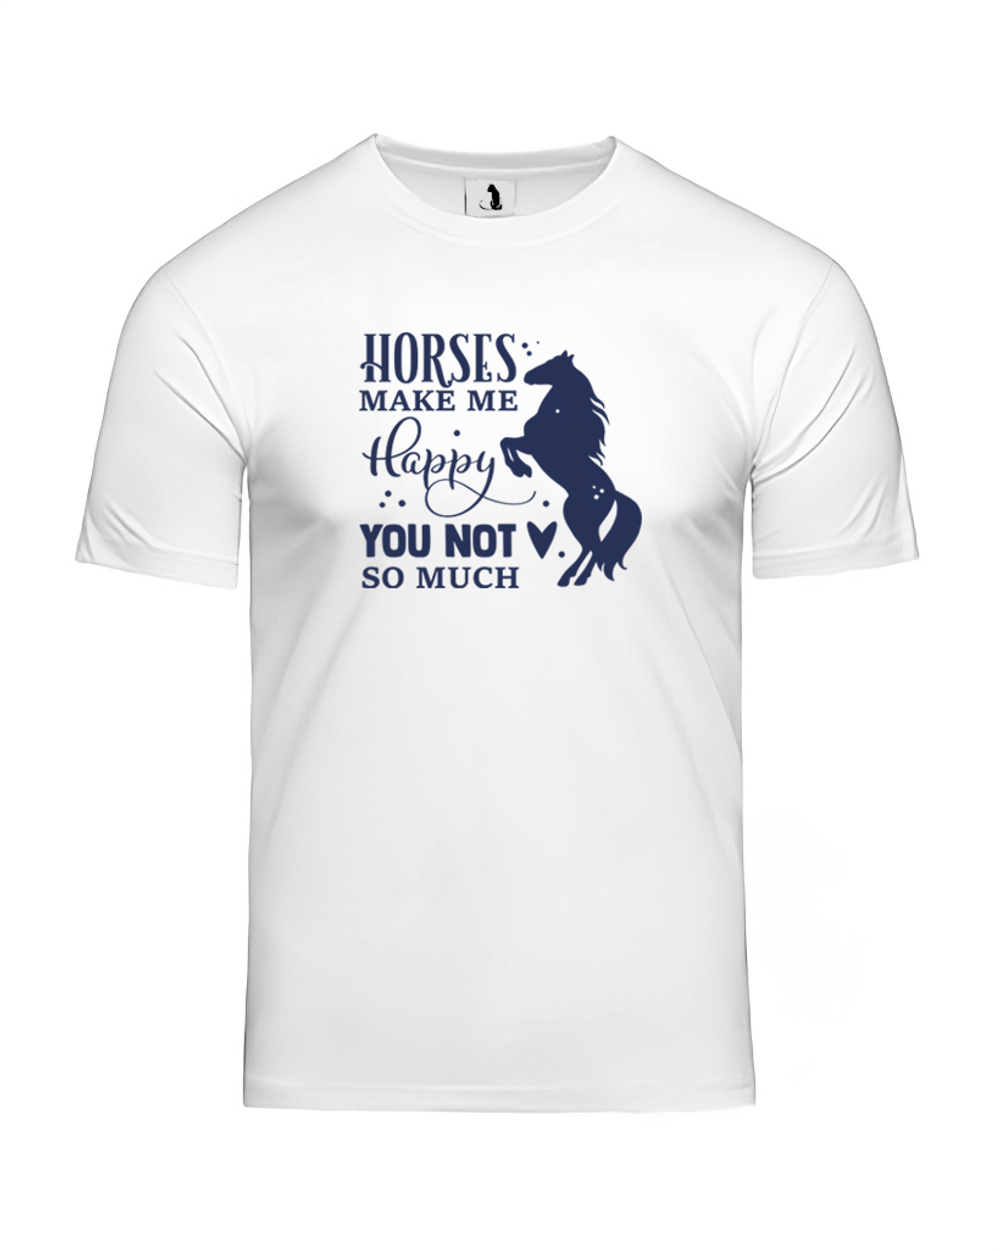 Футболка Horses make me happy unisex белая с синим рисунком